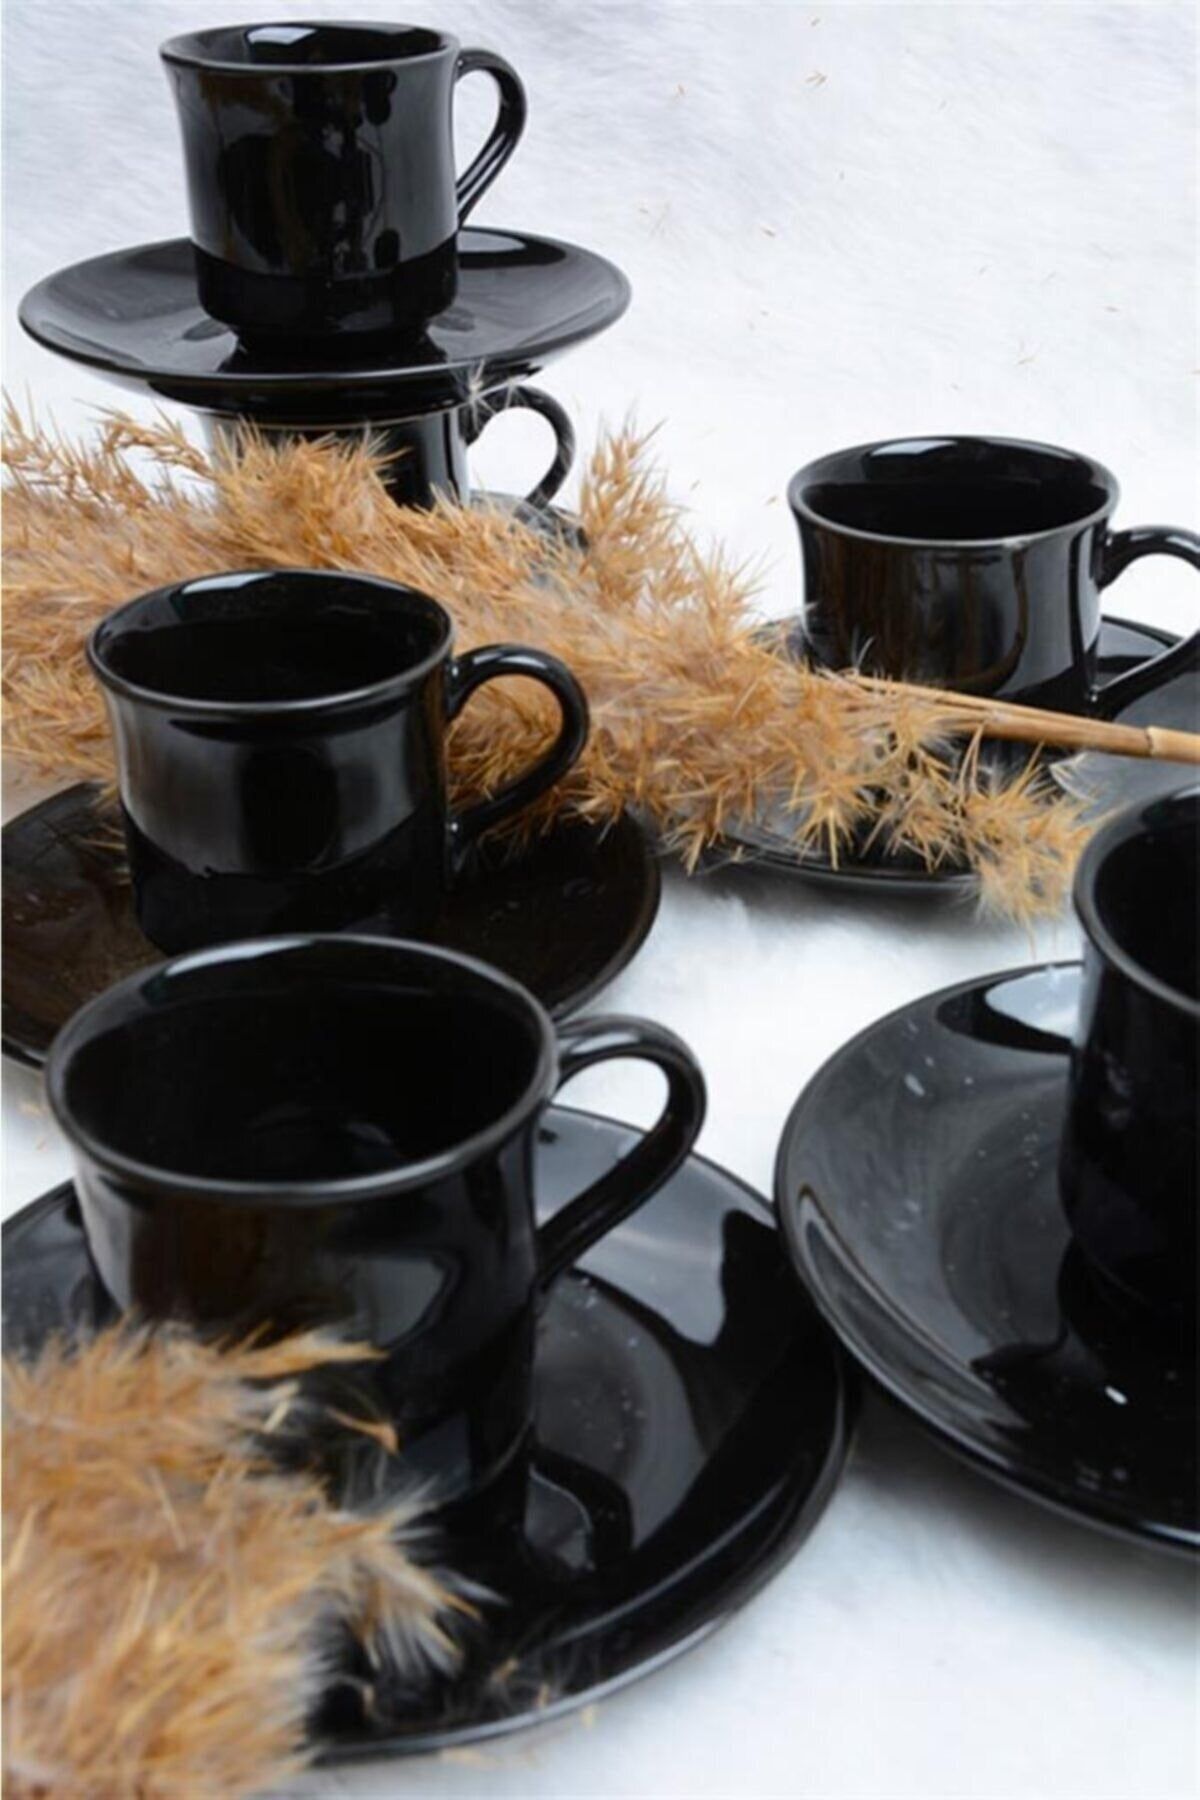 GULHANILE Porselen 6 Kişilik Kahve Fincan Seti Siyah Siyah Antik